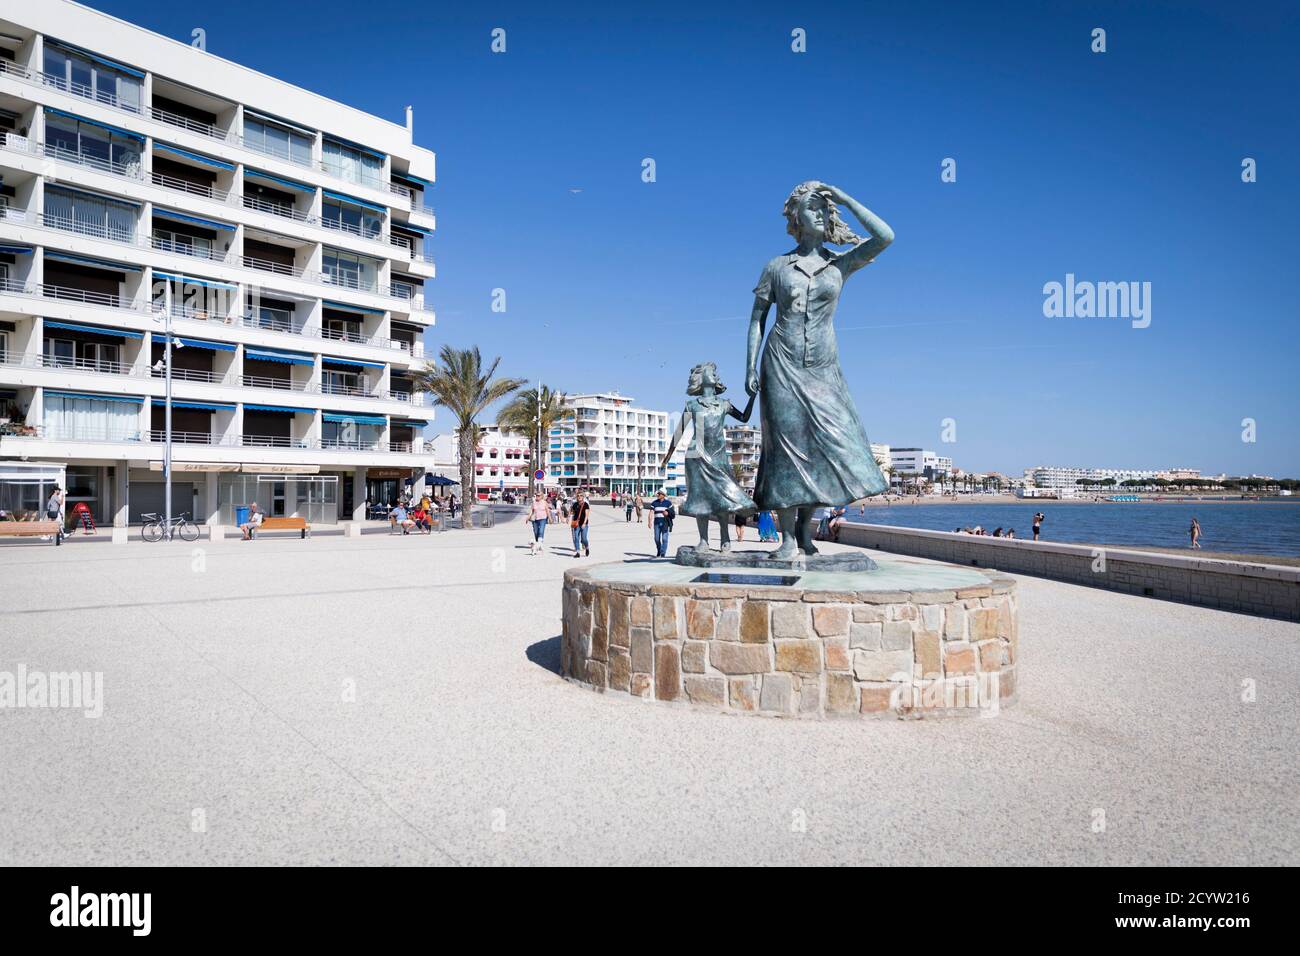 Le Grau-du-ROI (Südostfrankreich): Statue der Hoffnung, Bronzestatue des Künstlers Salem, die Mutter und Tochter darstellt, die wegschauen Stockfoto